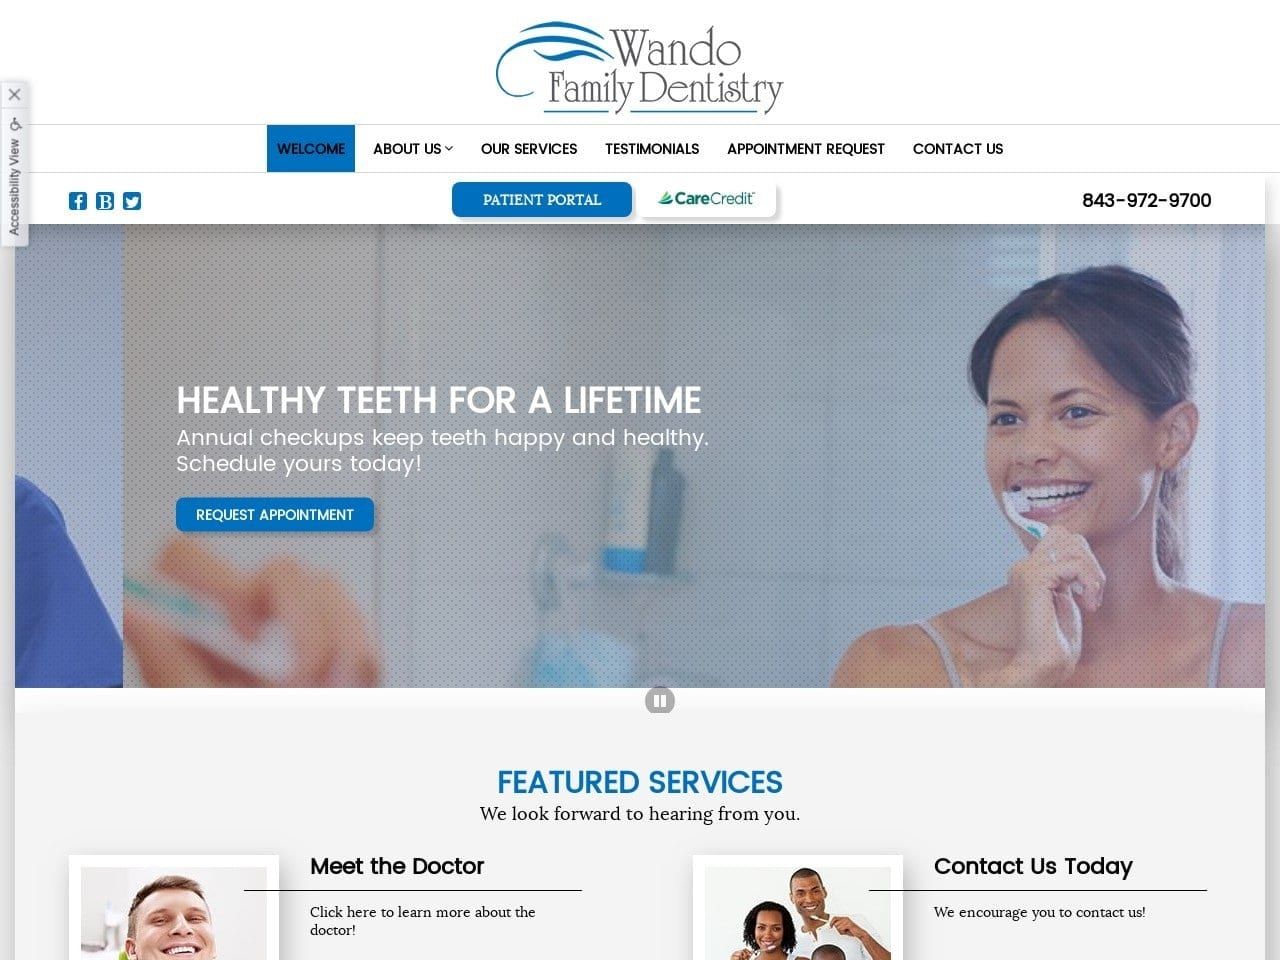 Wando Family Dentistry Website Screenshot from wandofamilydentistry.com